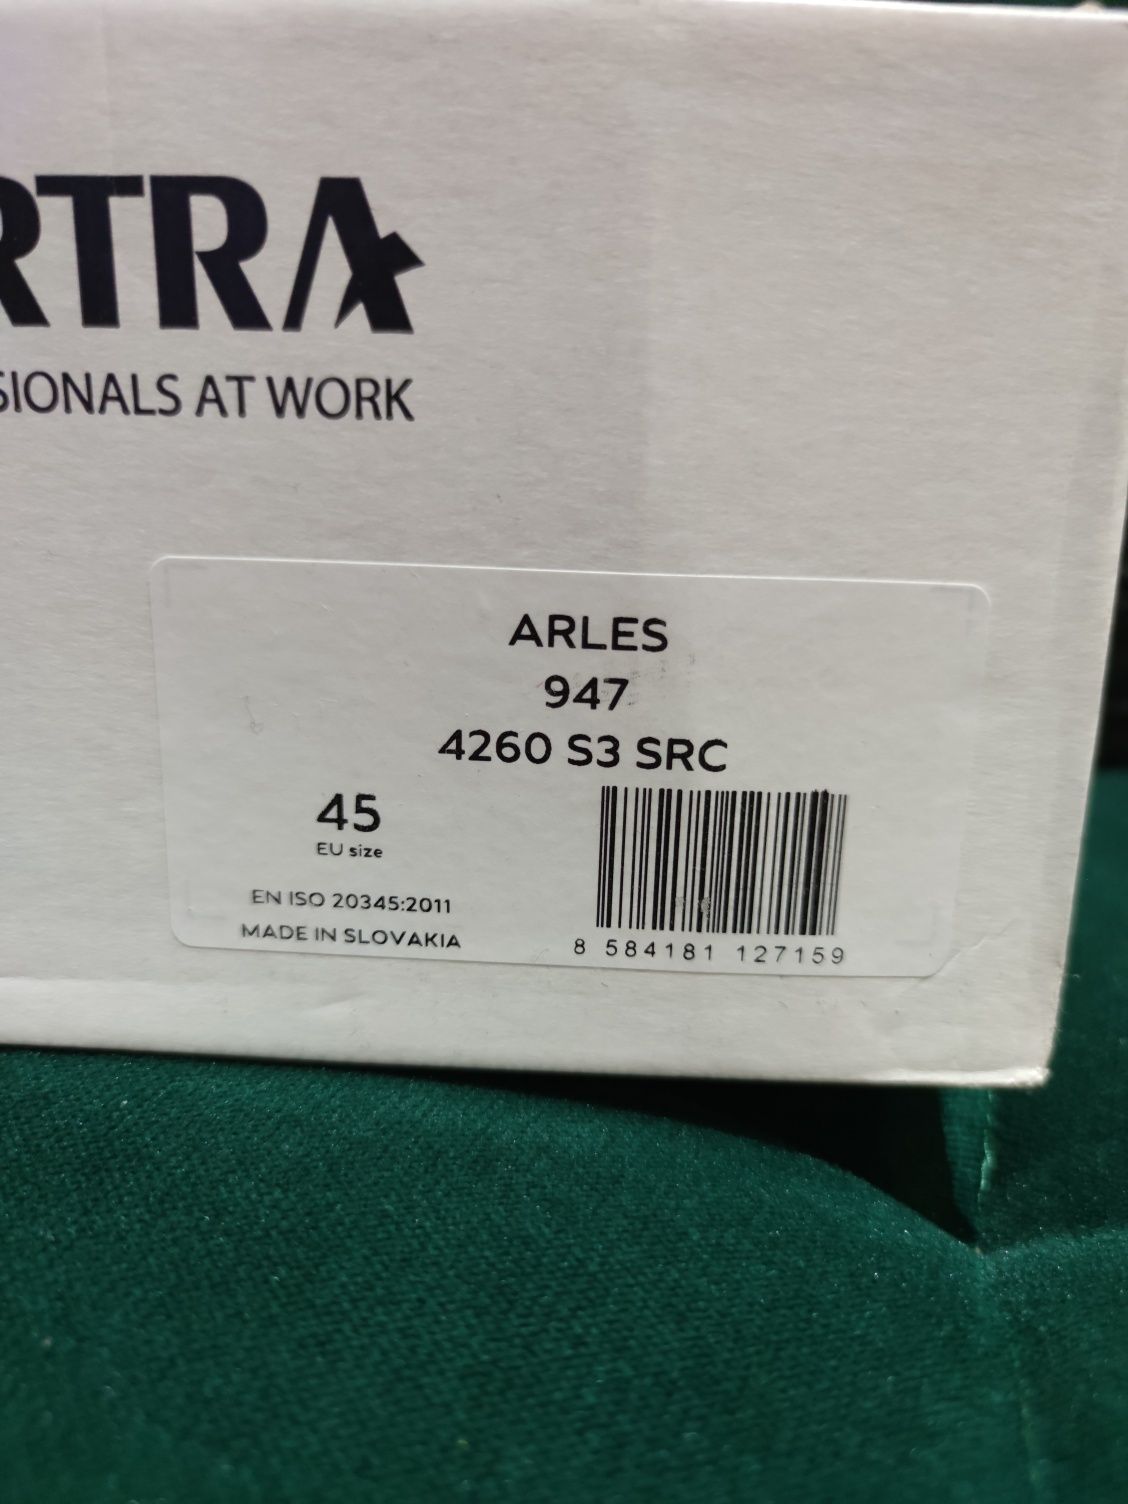 Buty męskie robocze firmy Artra